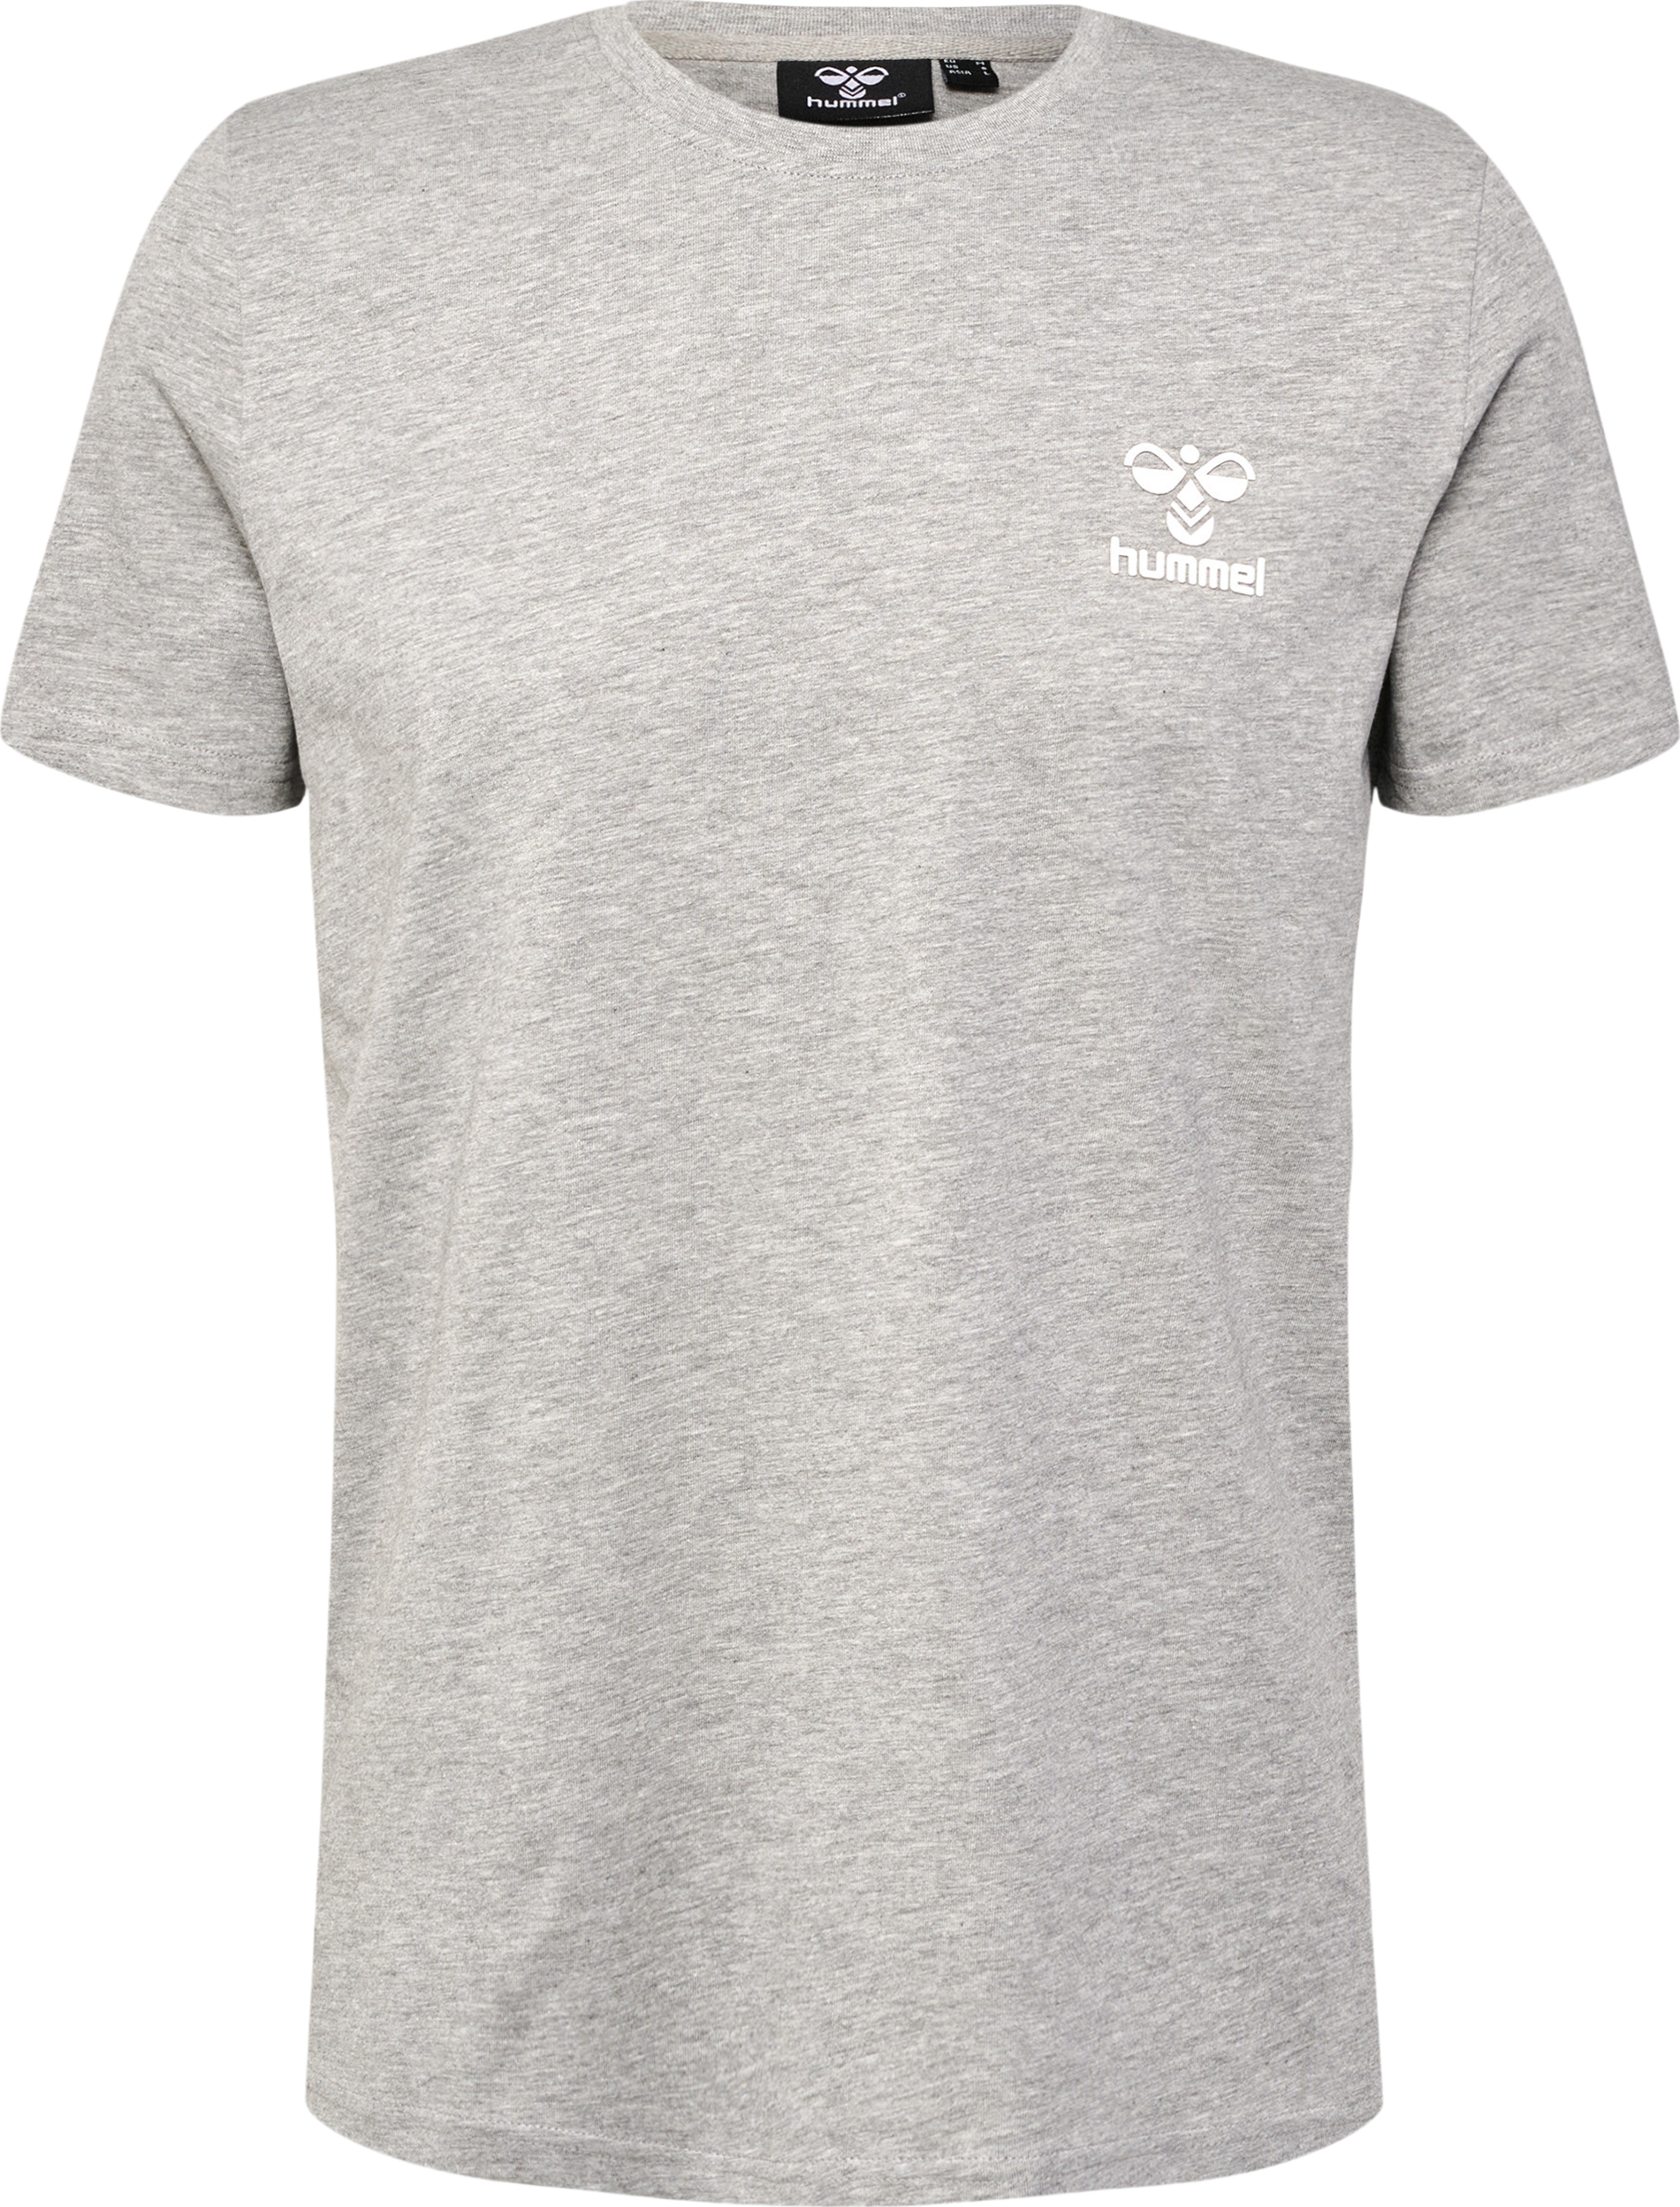 Hummel Men’s hmlICONS T-Shirt Grey Melange